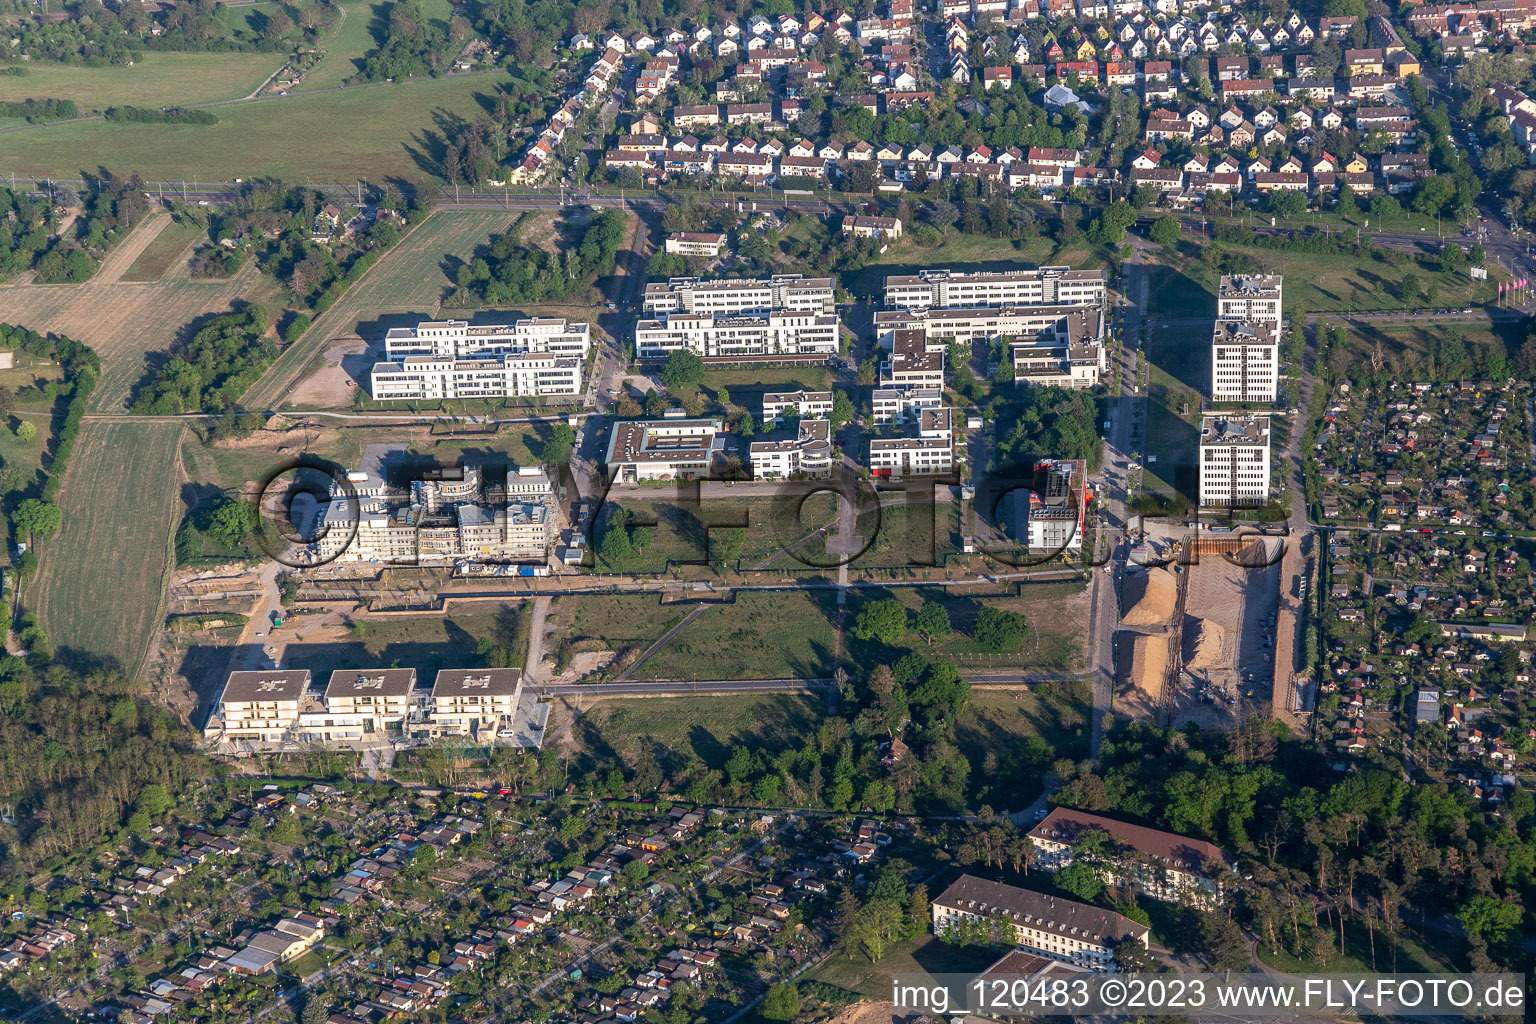 Image drone de Parc technologique à le quartier Rintheim in Karlsruhe dans le département Bade-Wurtemberg, Allemagne